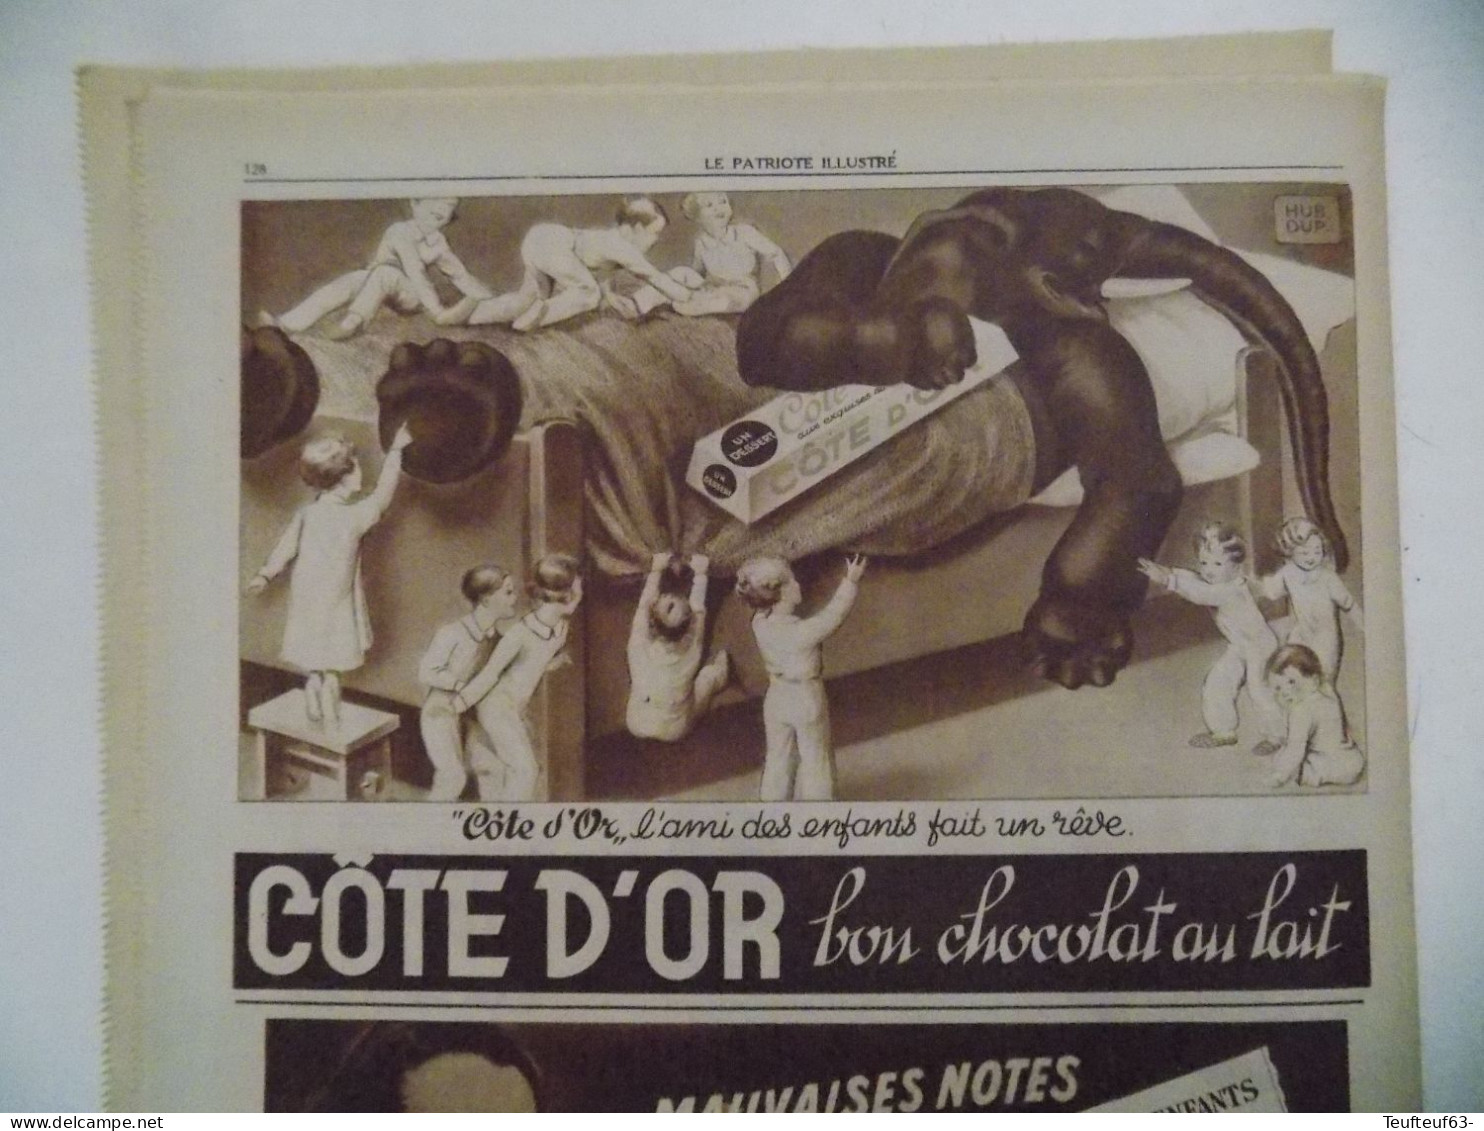 Le Patriote illustré n° 4/1936 roi George V d'Angleterre est mort - père Damien - Ibiza - belle pub chocolat Côte d'or..